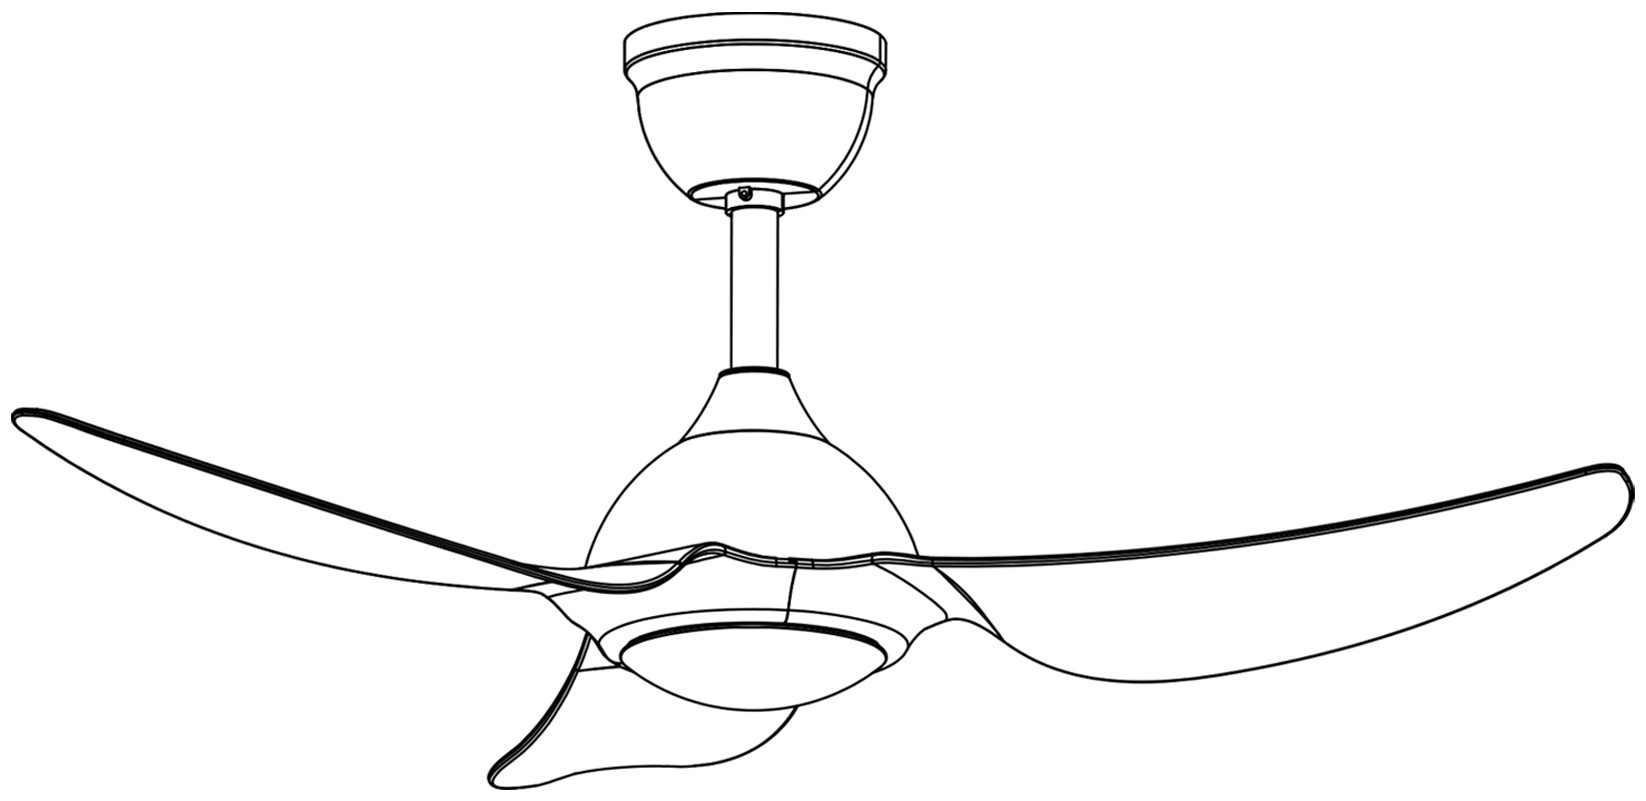 吊扇灯(f3661)